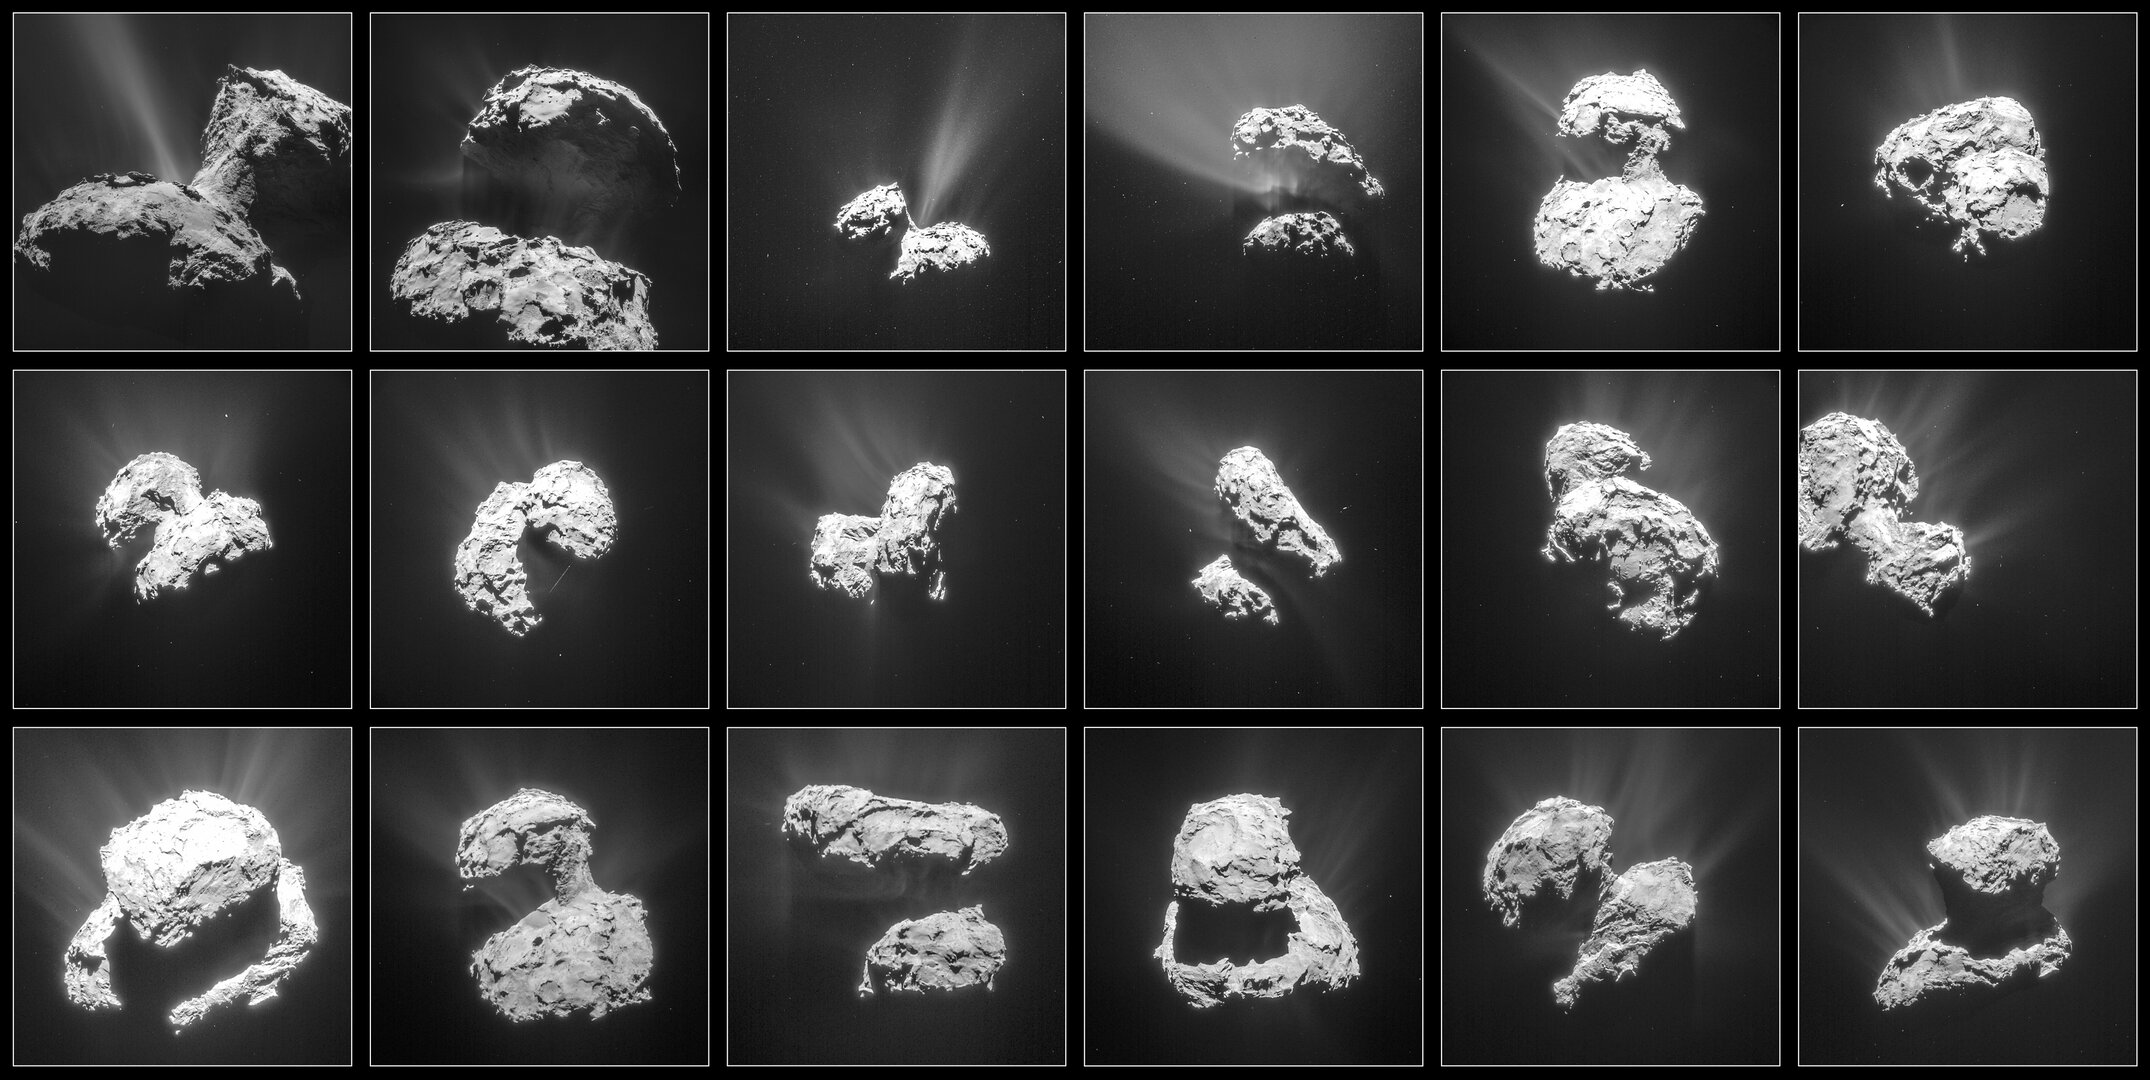 Aktivität am Kometen zwischen dem 31. Jan und dem 25. März 2015 